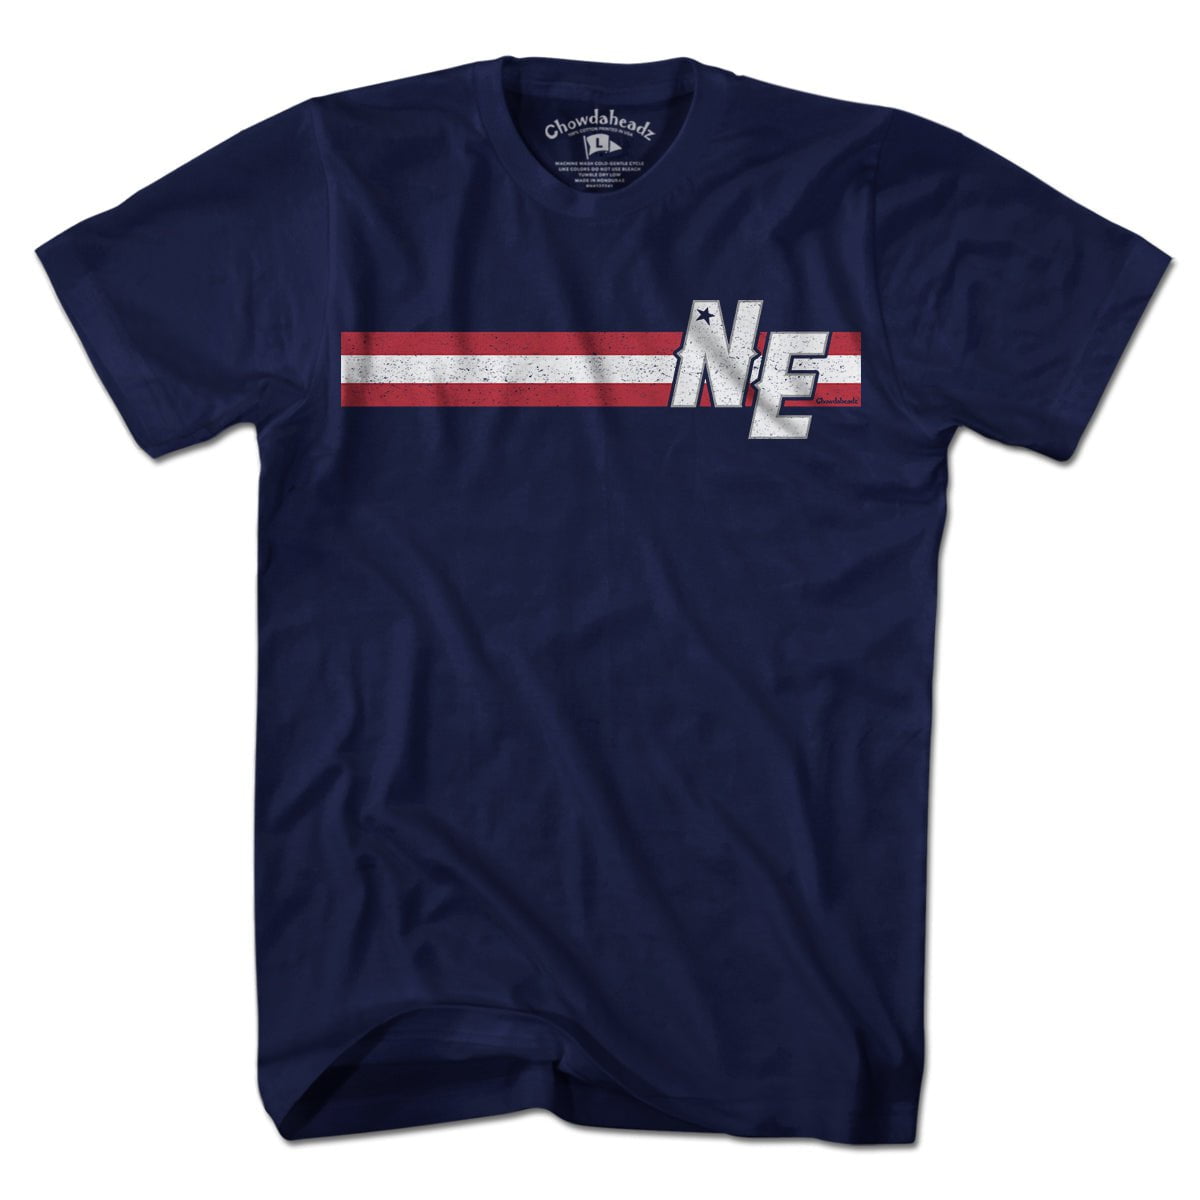 New England Sideline T-Shirt - Chowdaheadz